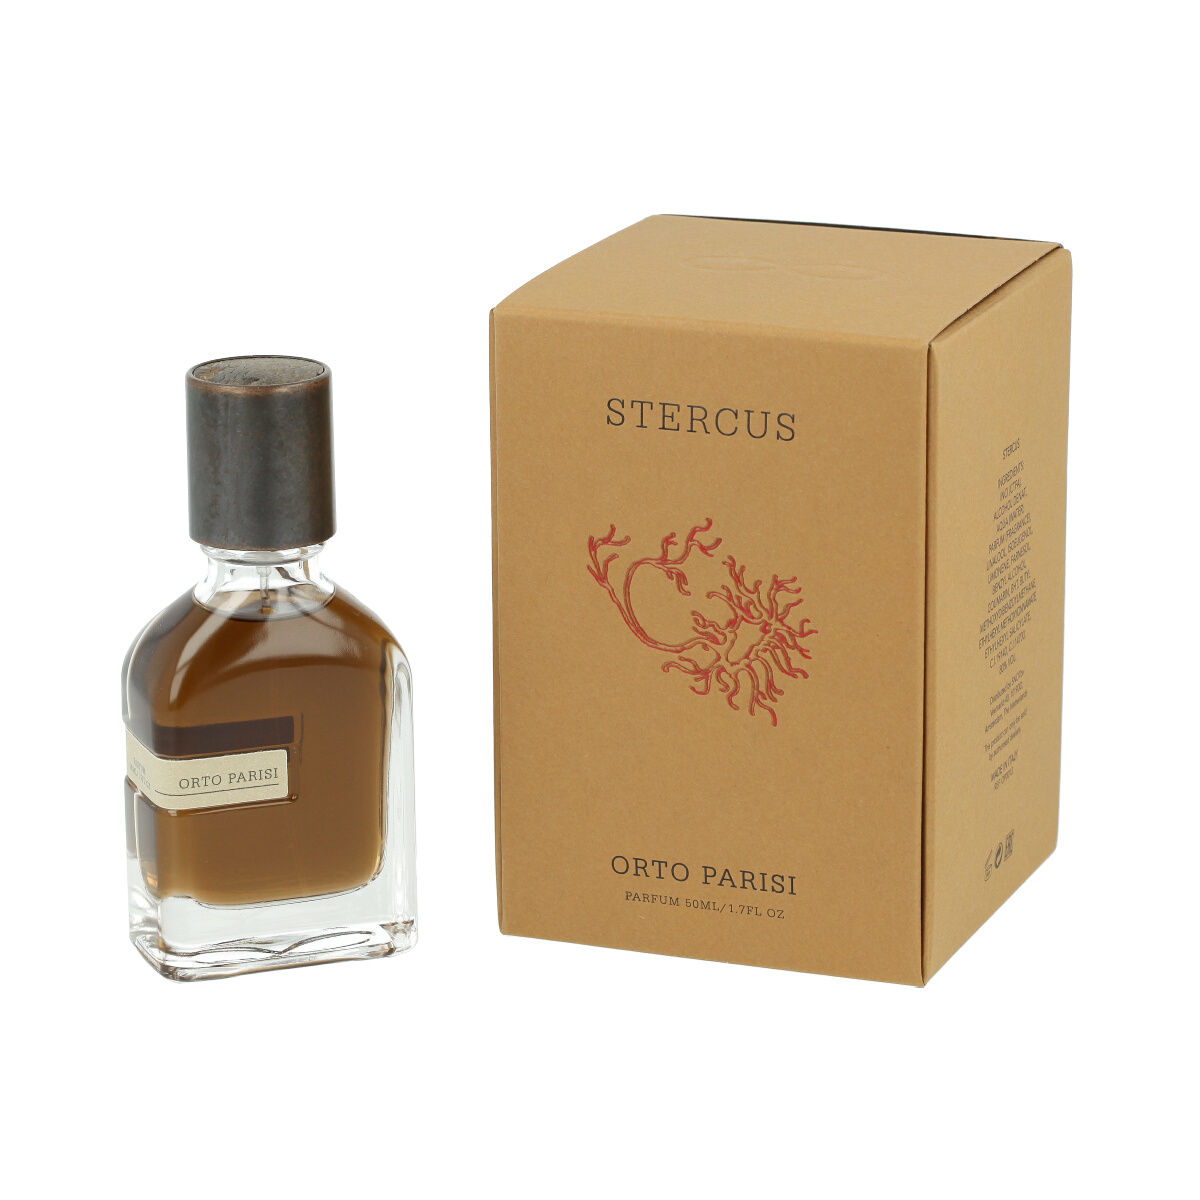 Orto Parisi Stercus 10 ml NIŠINIAI kvepalų mėginukas (atomaizeris) Unisex Parfum